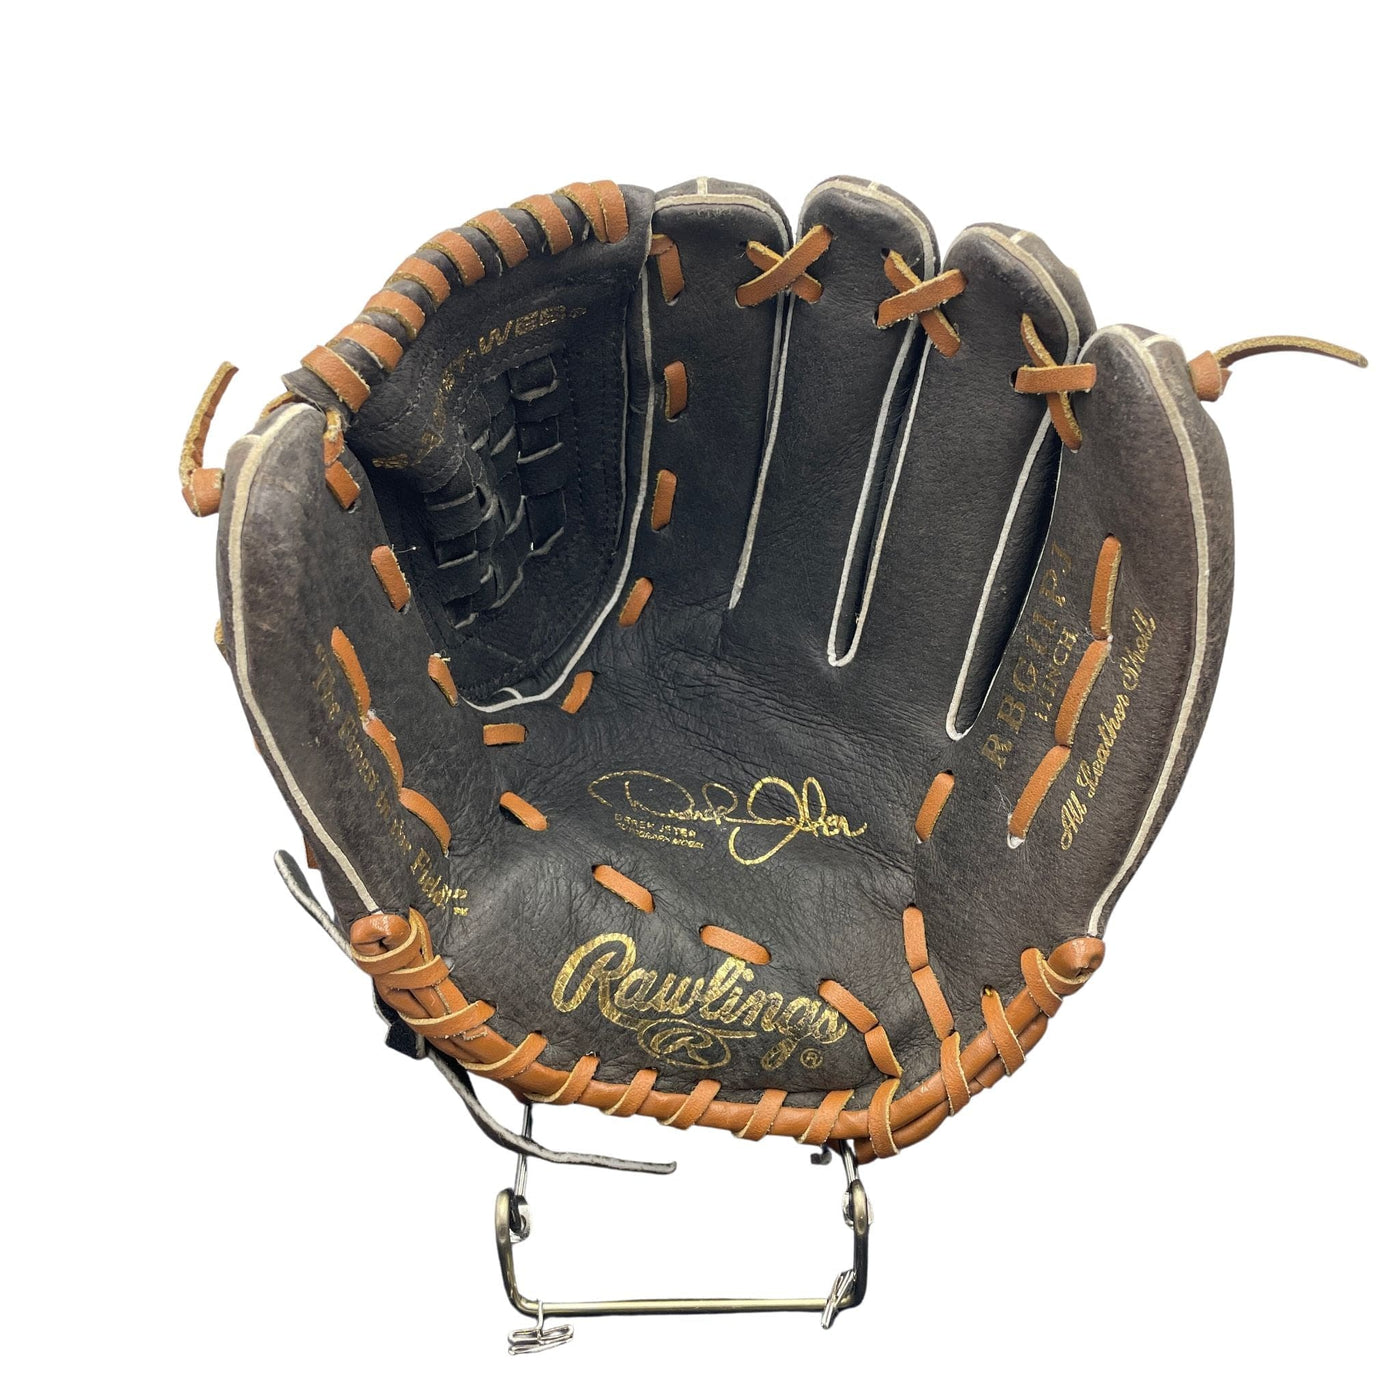 Derek Jeter Black Baseball Glove - G015